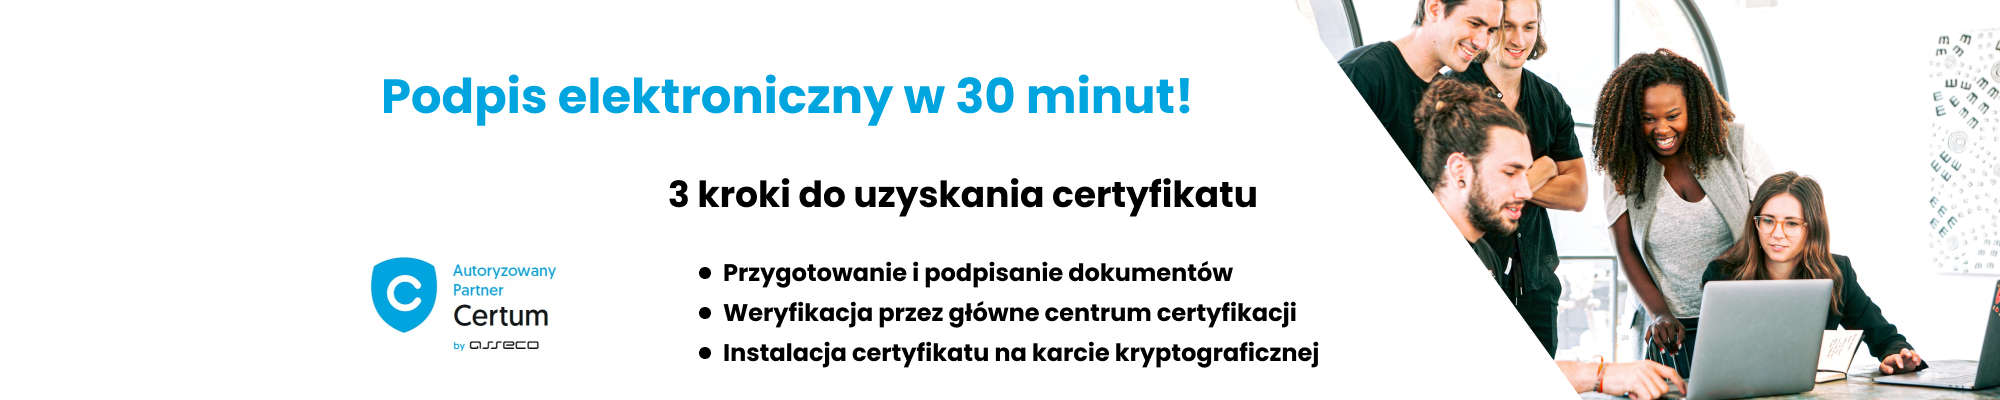 Podpis elektroniczny Bydgoszcz, wydanie w 30 minut.